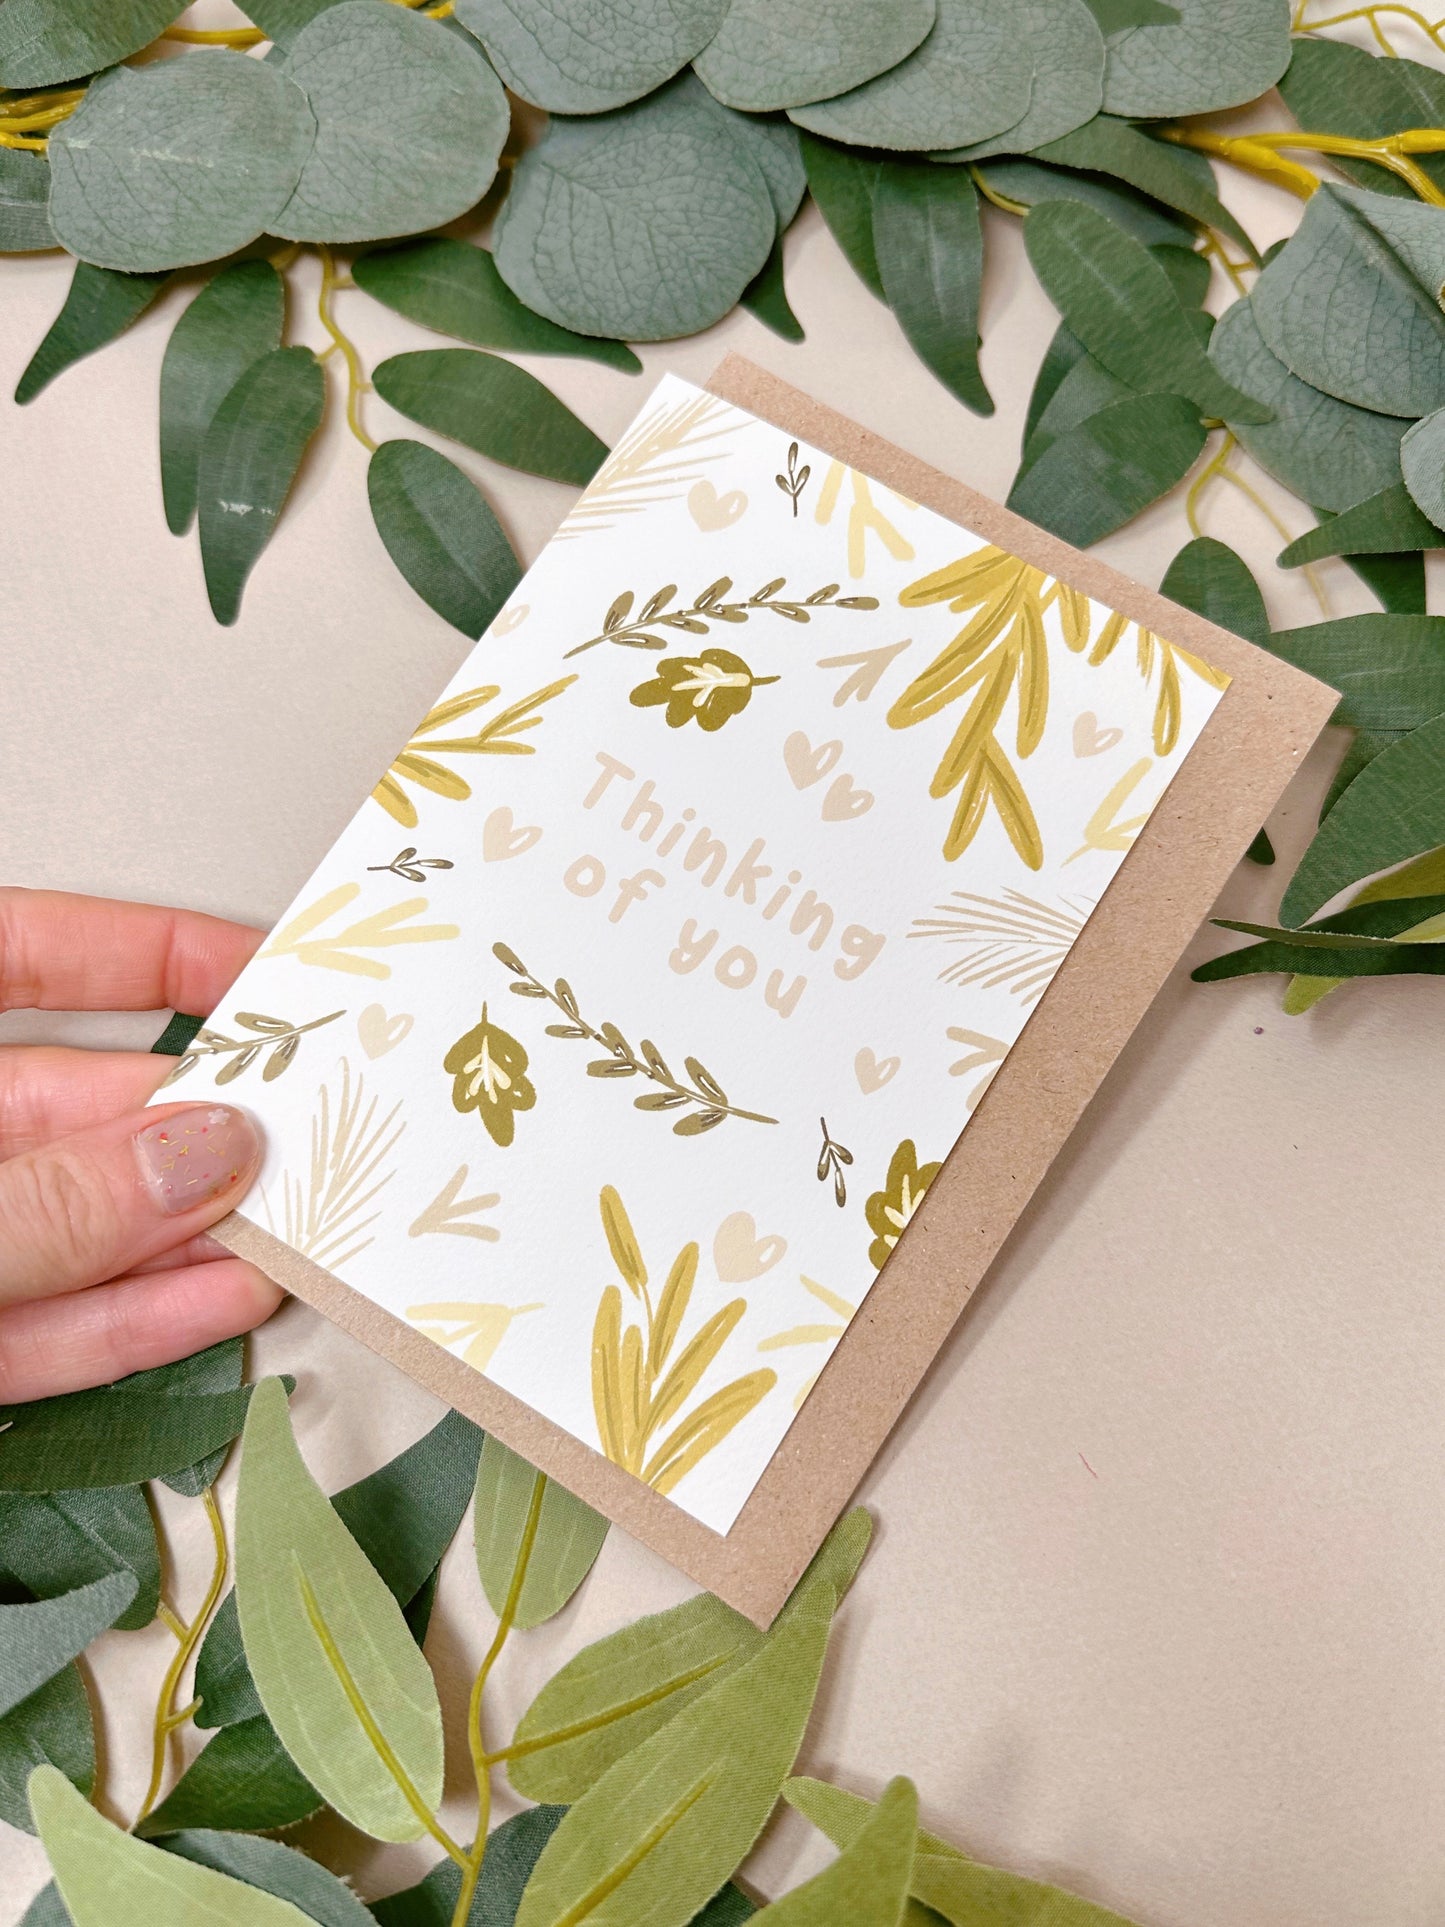 Botanical Thinking of You Card